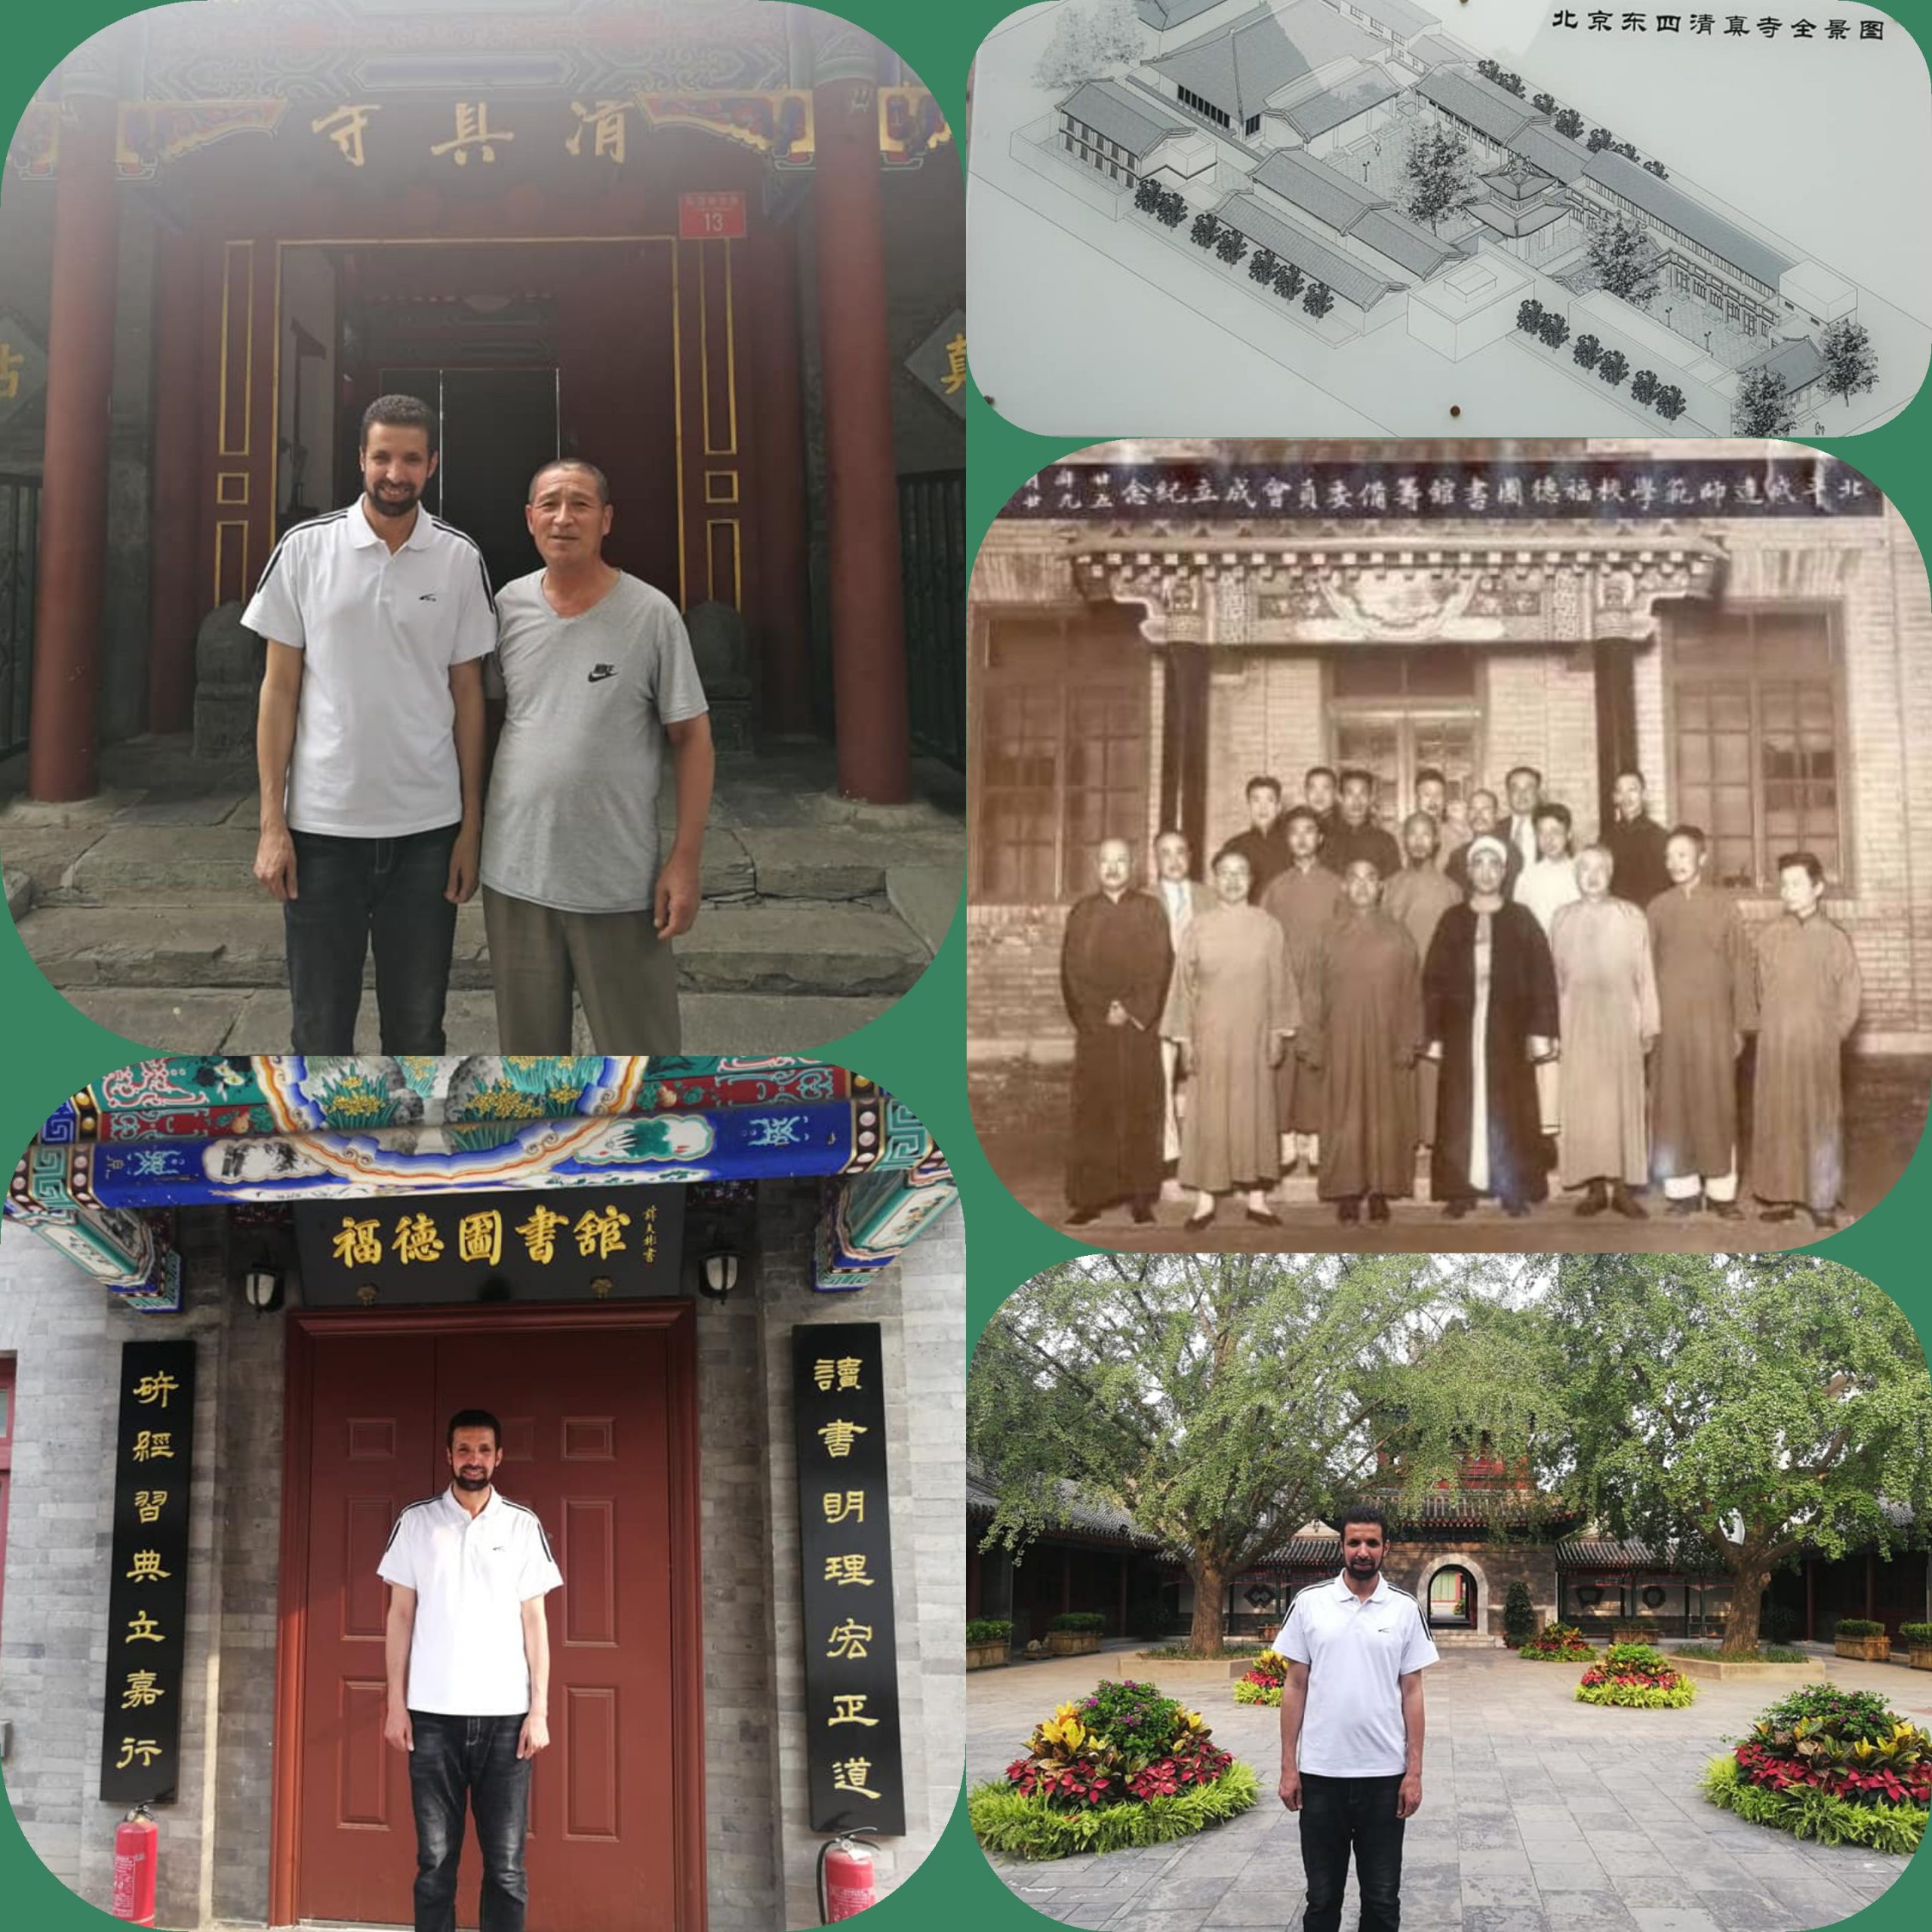 جامع "دونغسي" الأثري في بكين خط له الإمبراطور "تشو تشي يوى" لوحة بيده تحمل اسم (تشينغ جين سى) أي: "متعبد الصفاء والحق"